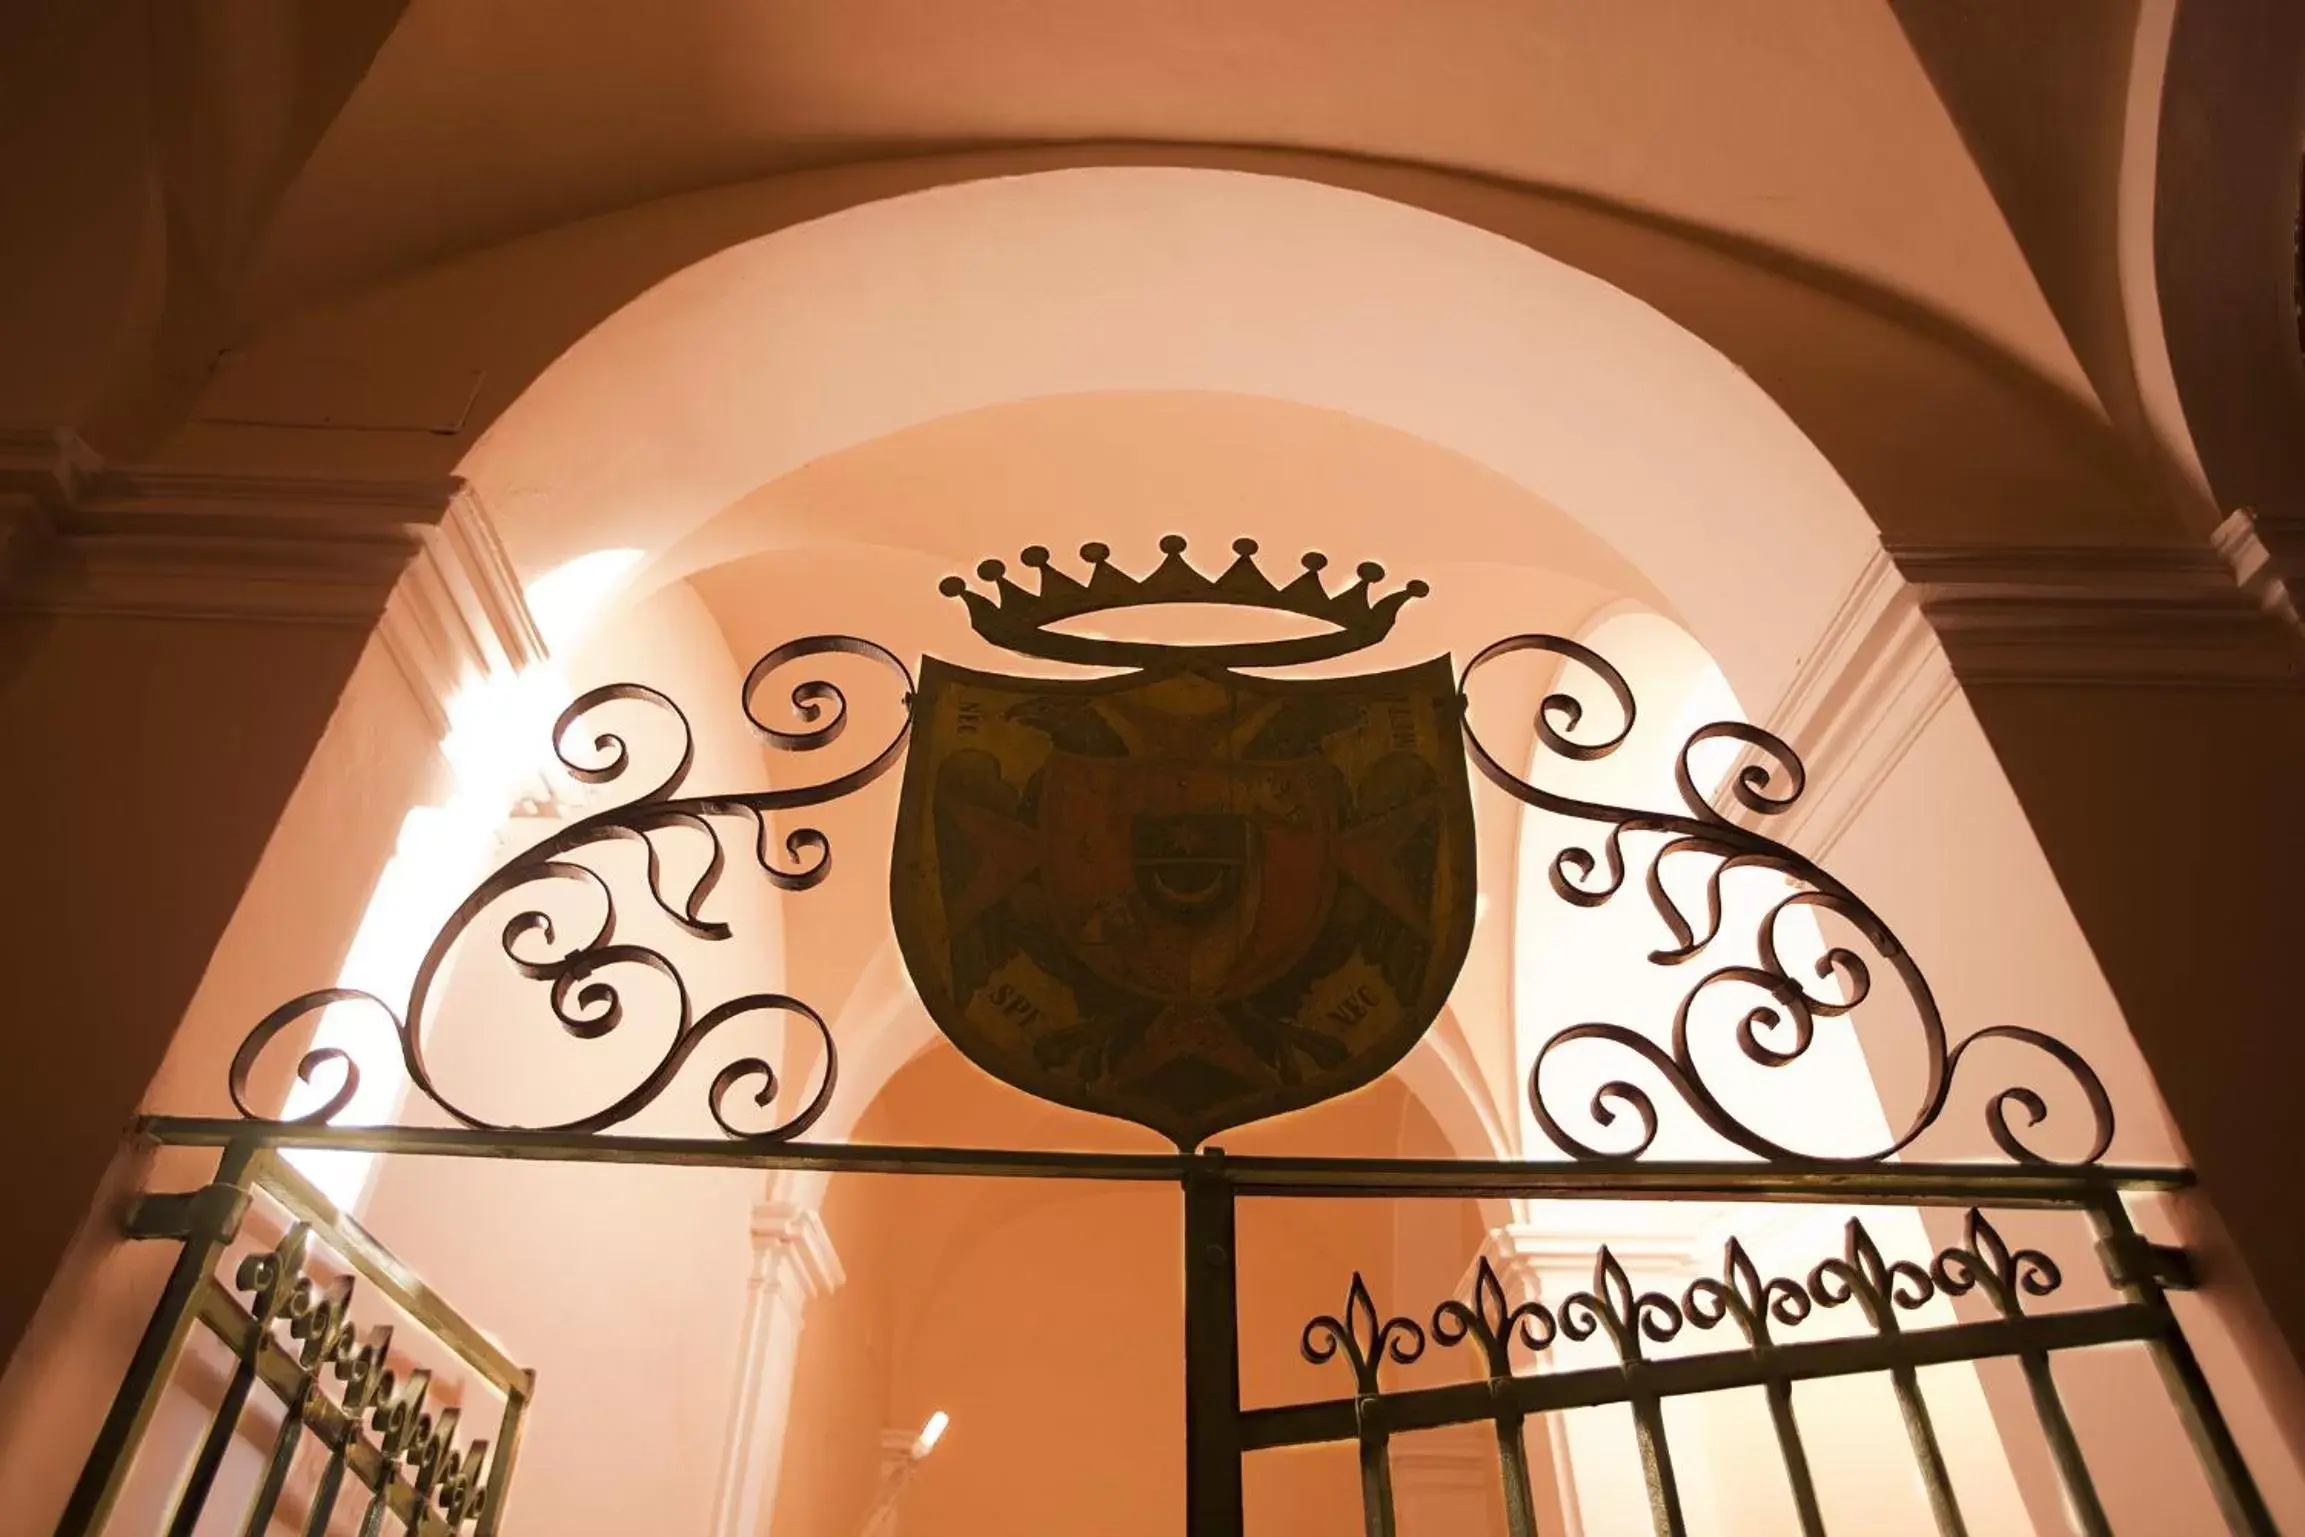 Decorative detail in Palazzo Carletti